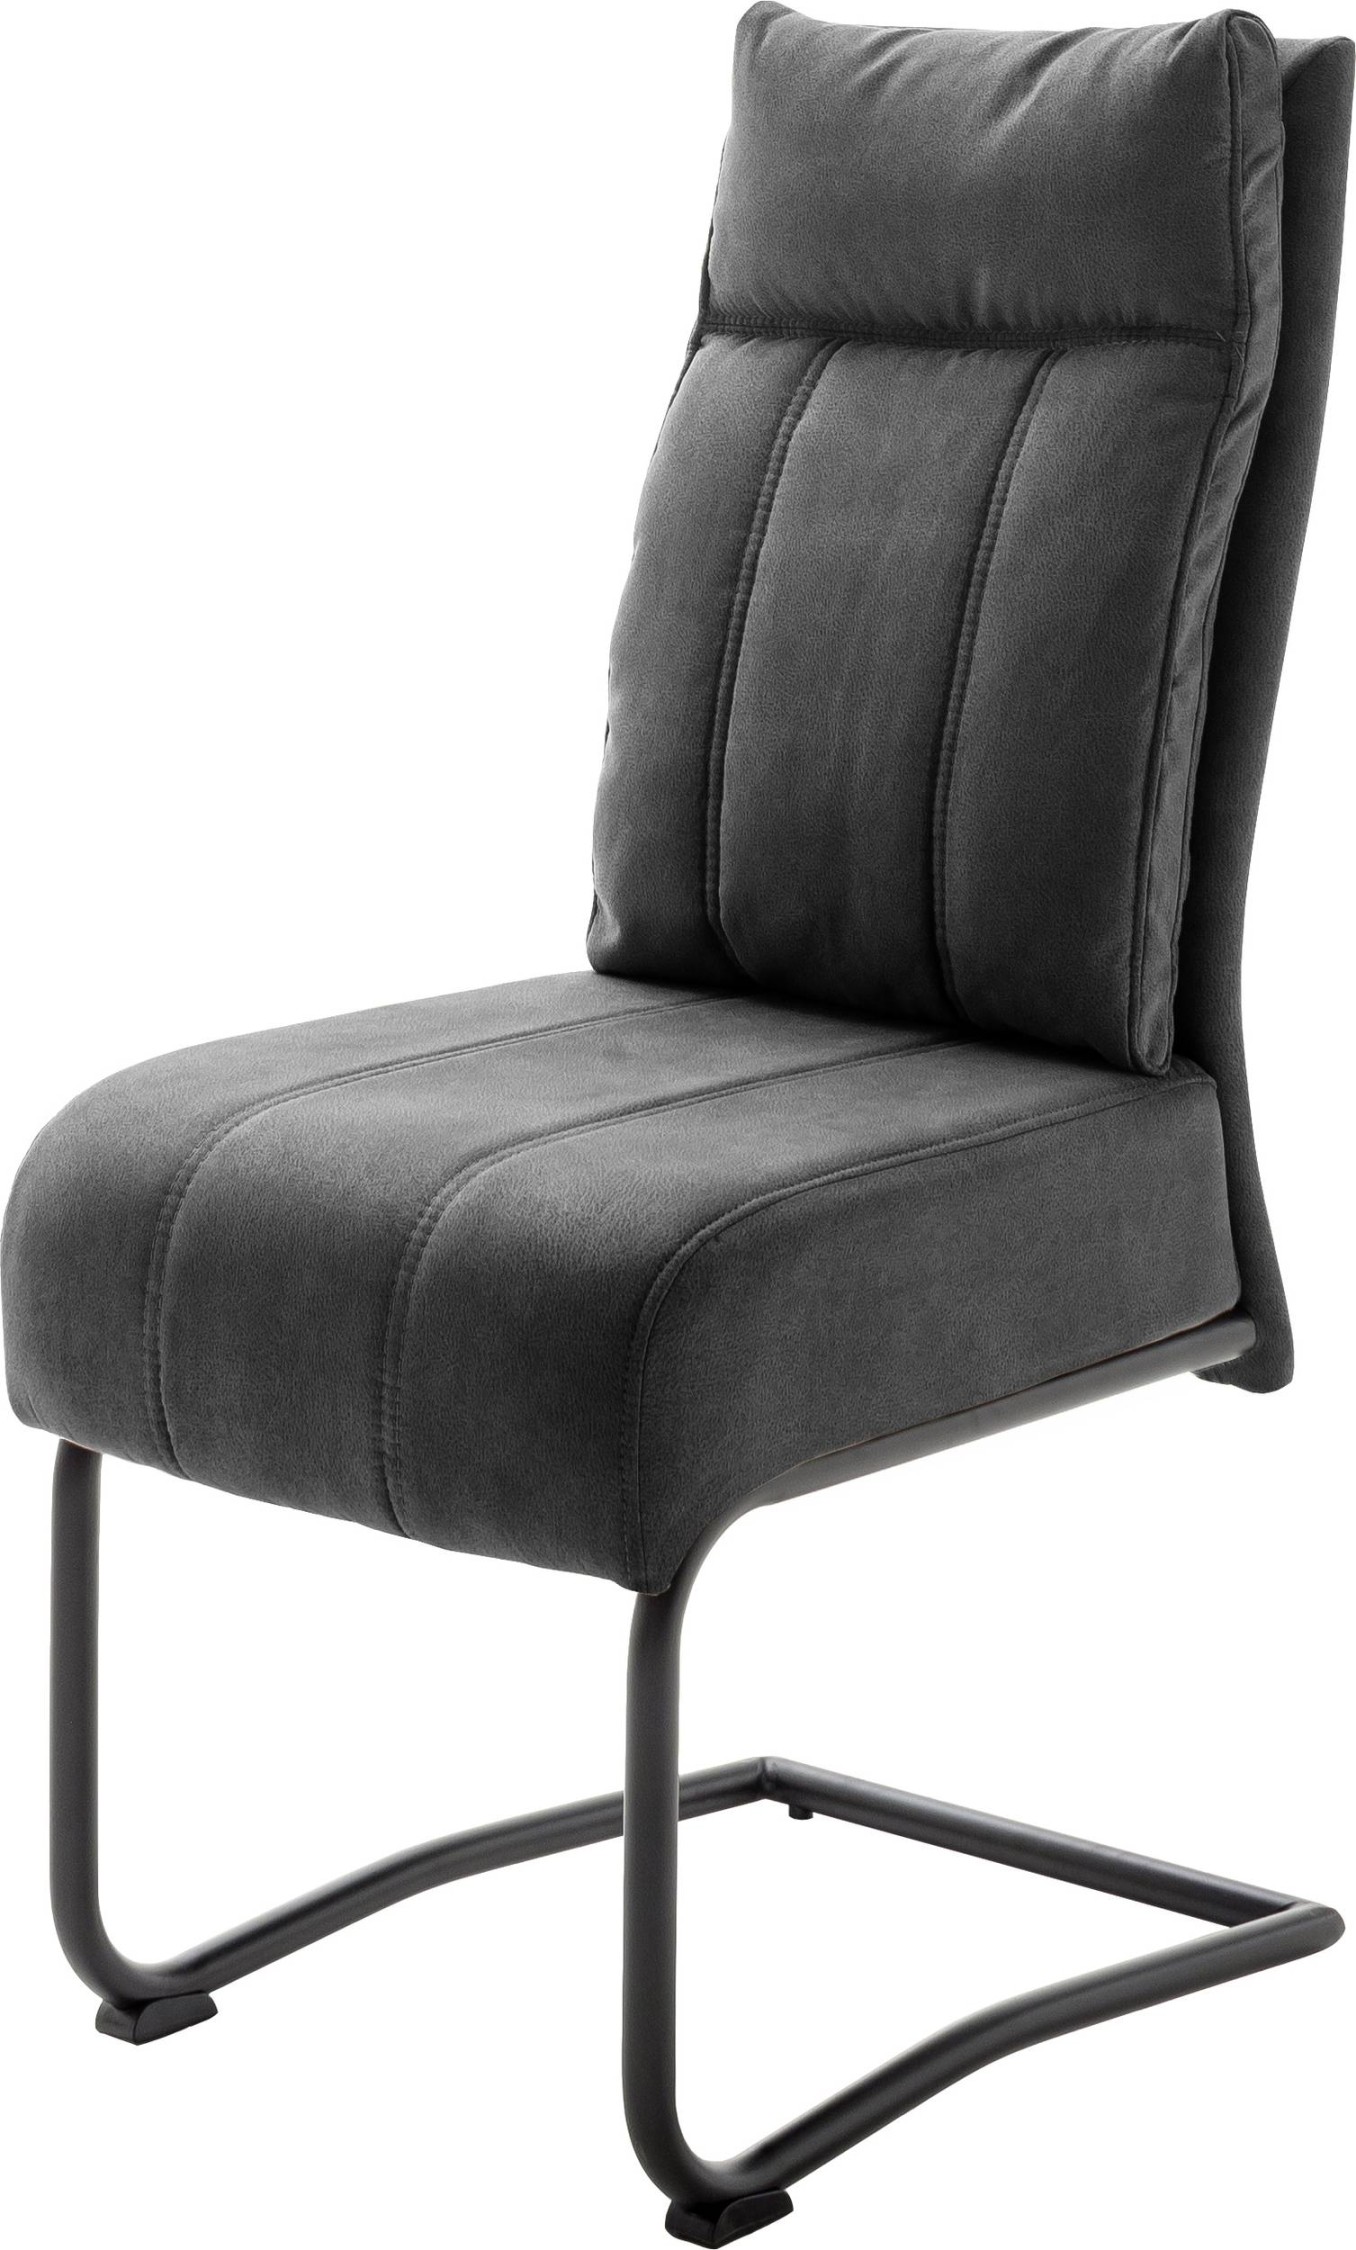 Bequemer Schwingstuhl In Stilvollem Grau Für Entspanntes Sitzen